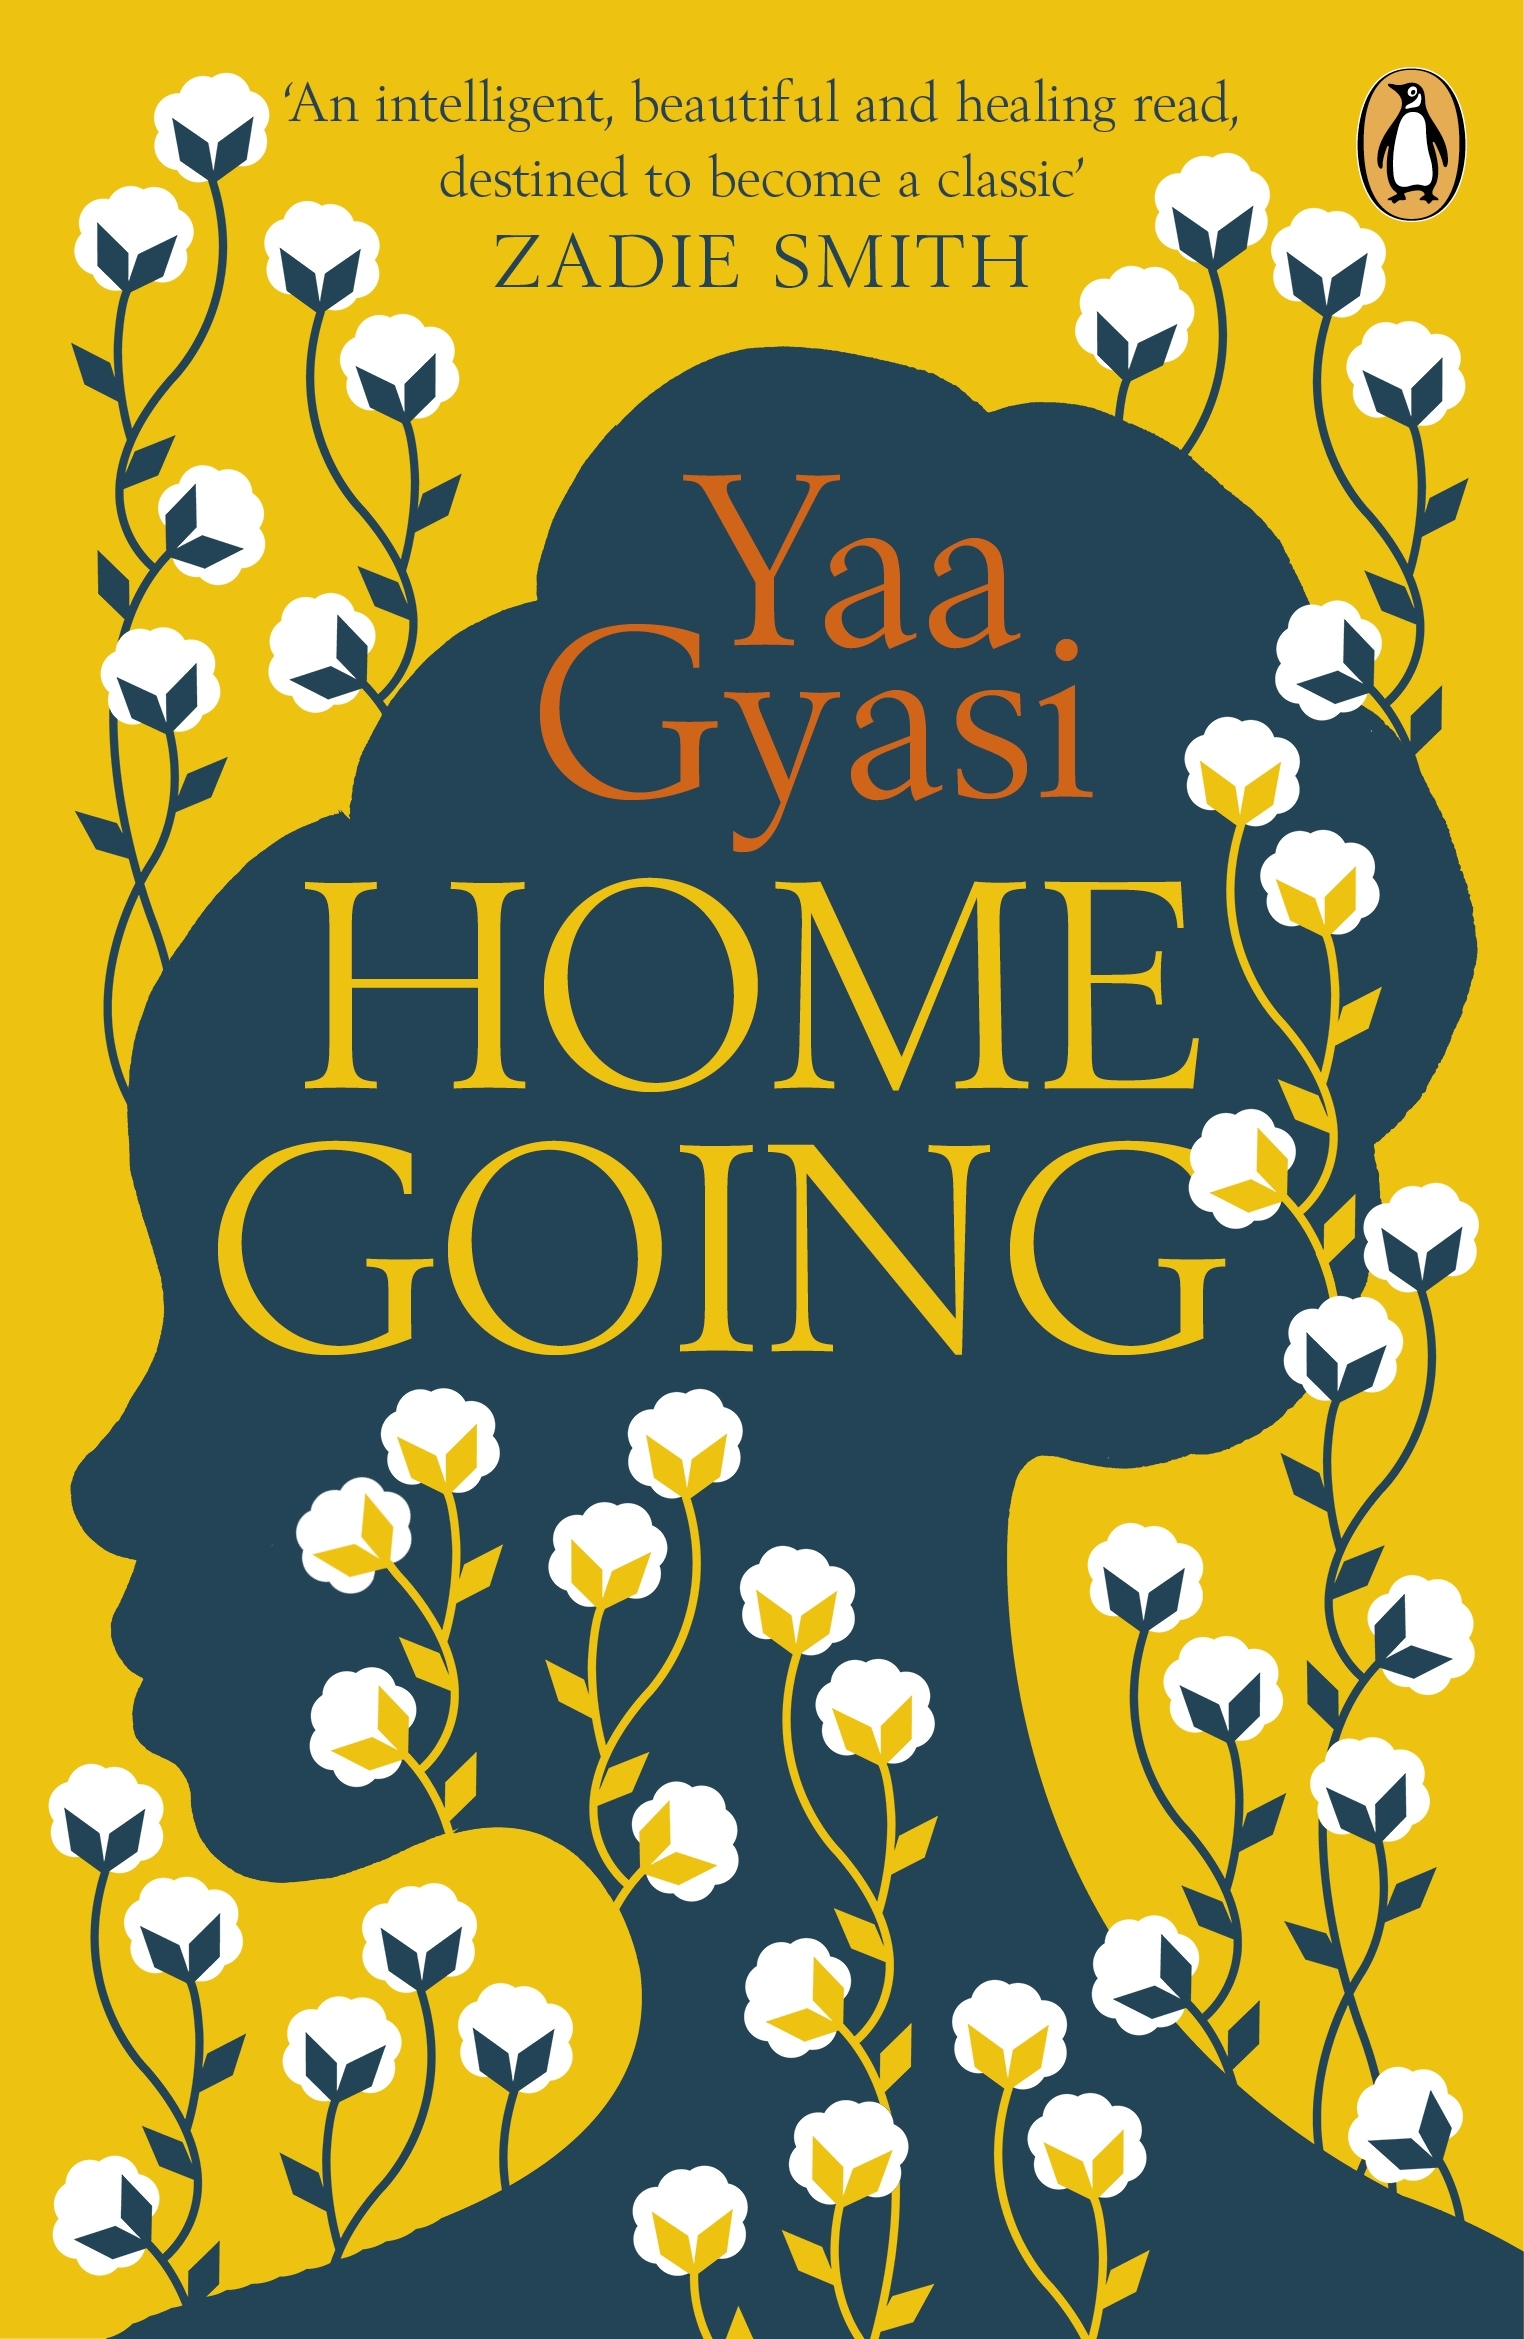 homegoing yaa gyasi sparknotes